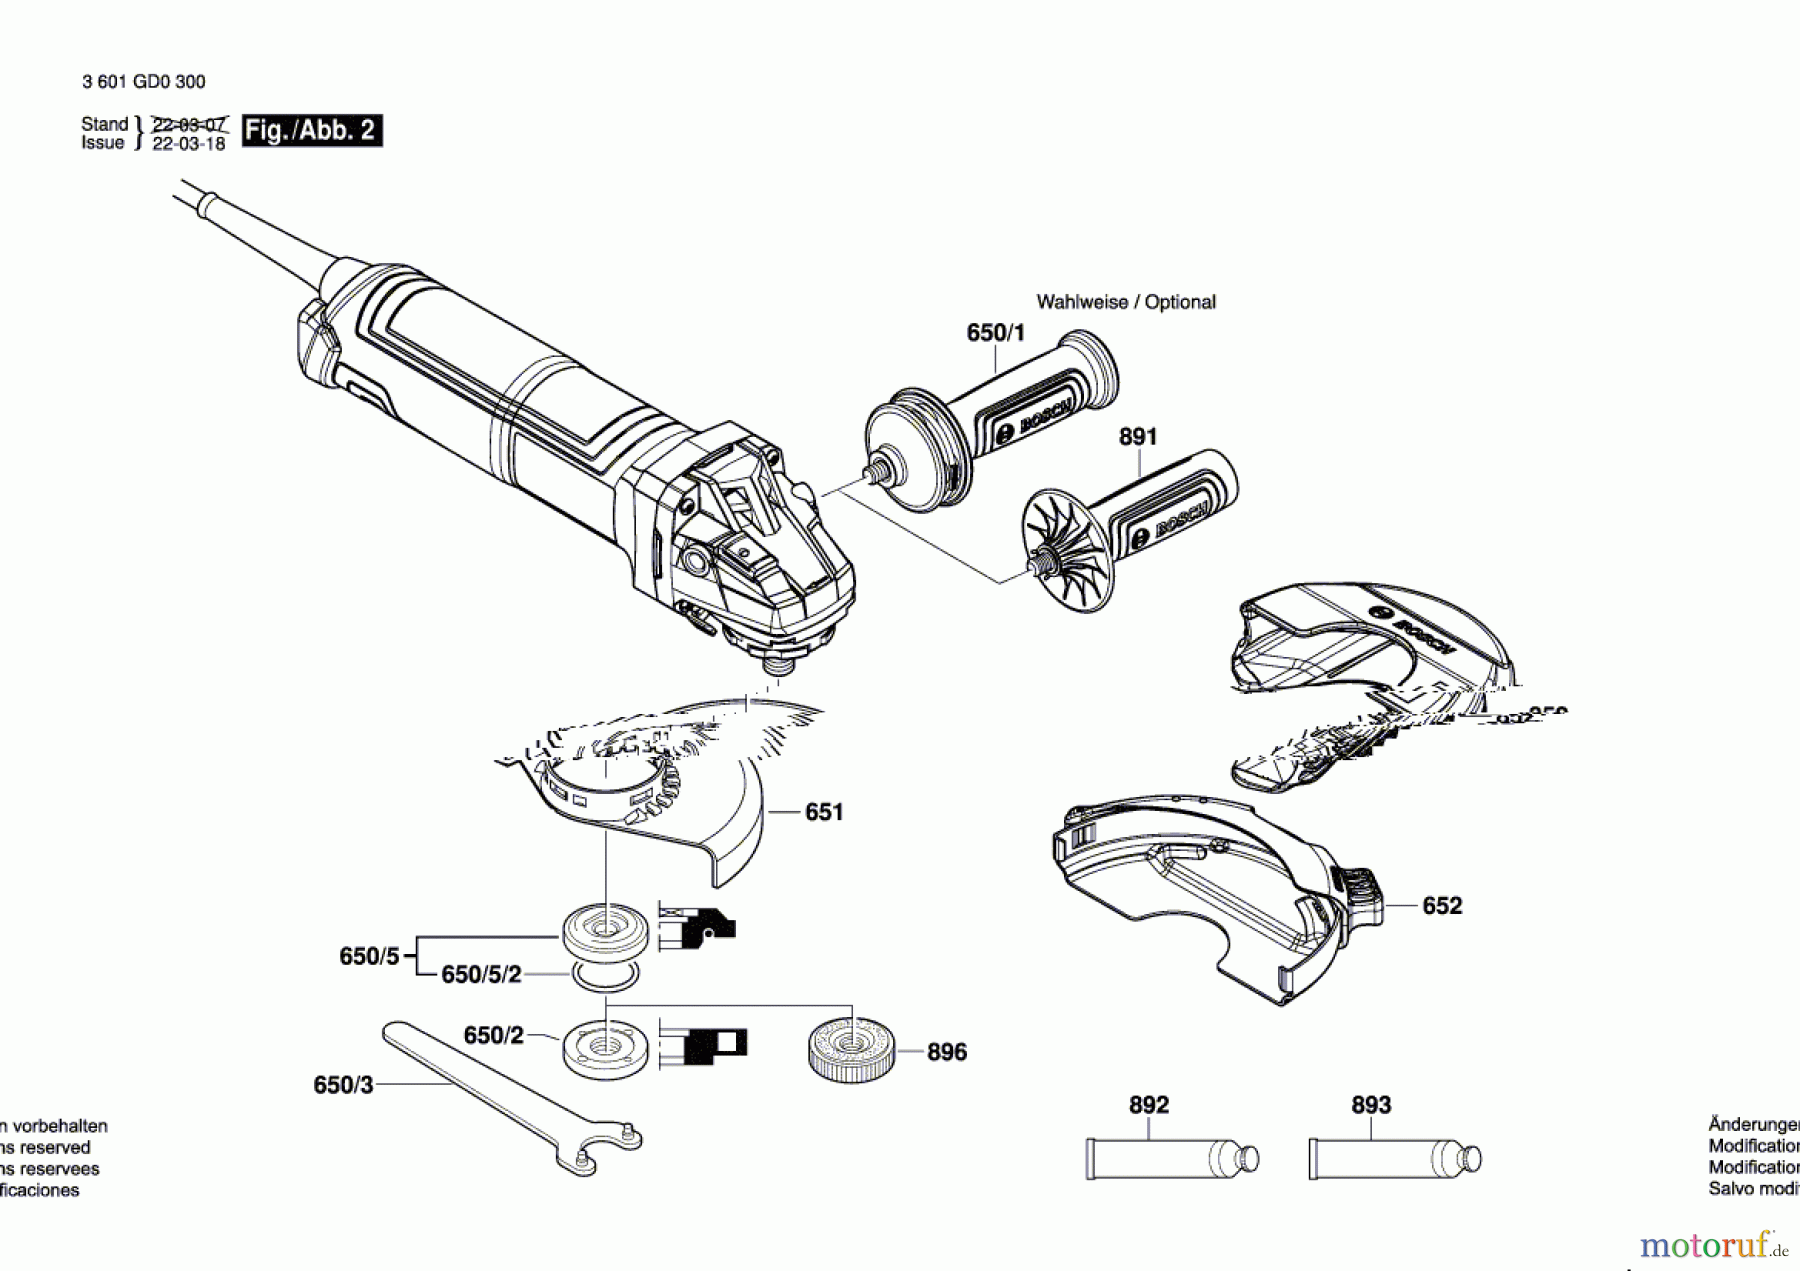  Bosch Werkzeug Winkelschleifer GWS 17-125 S Seite 2